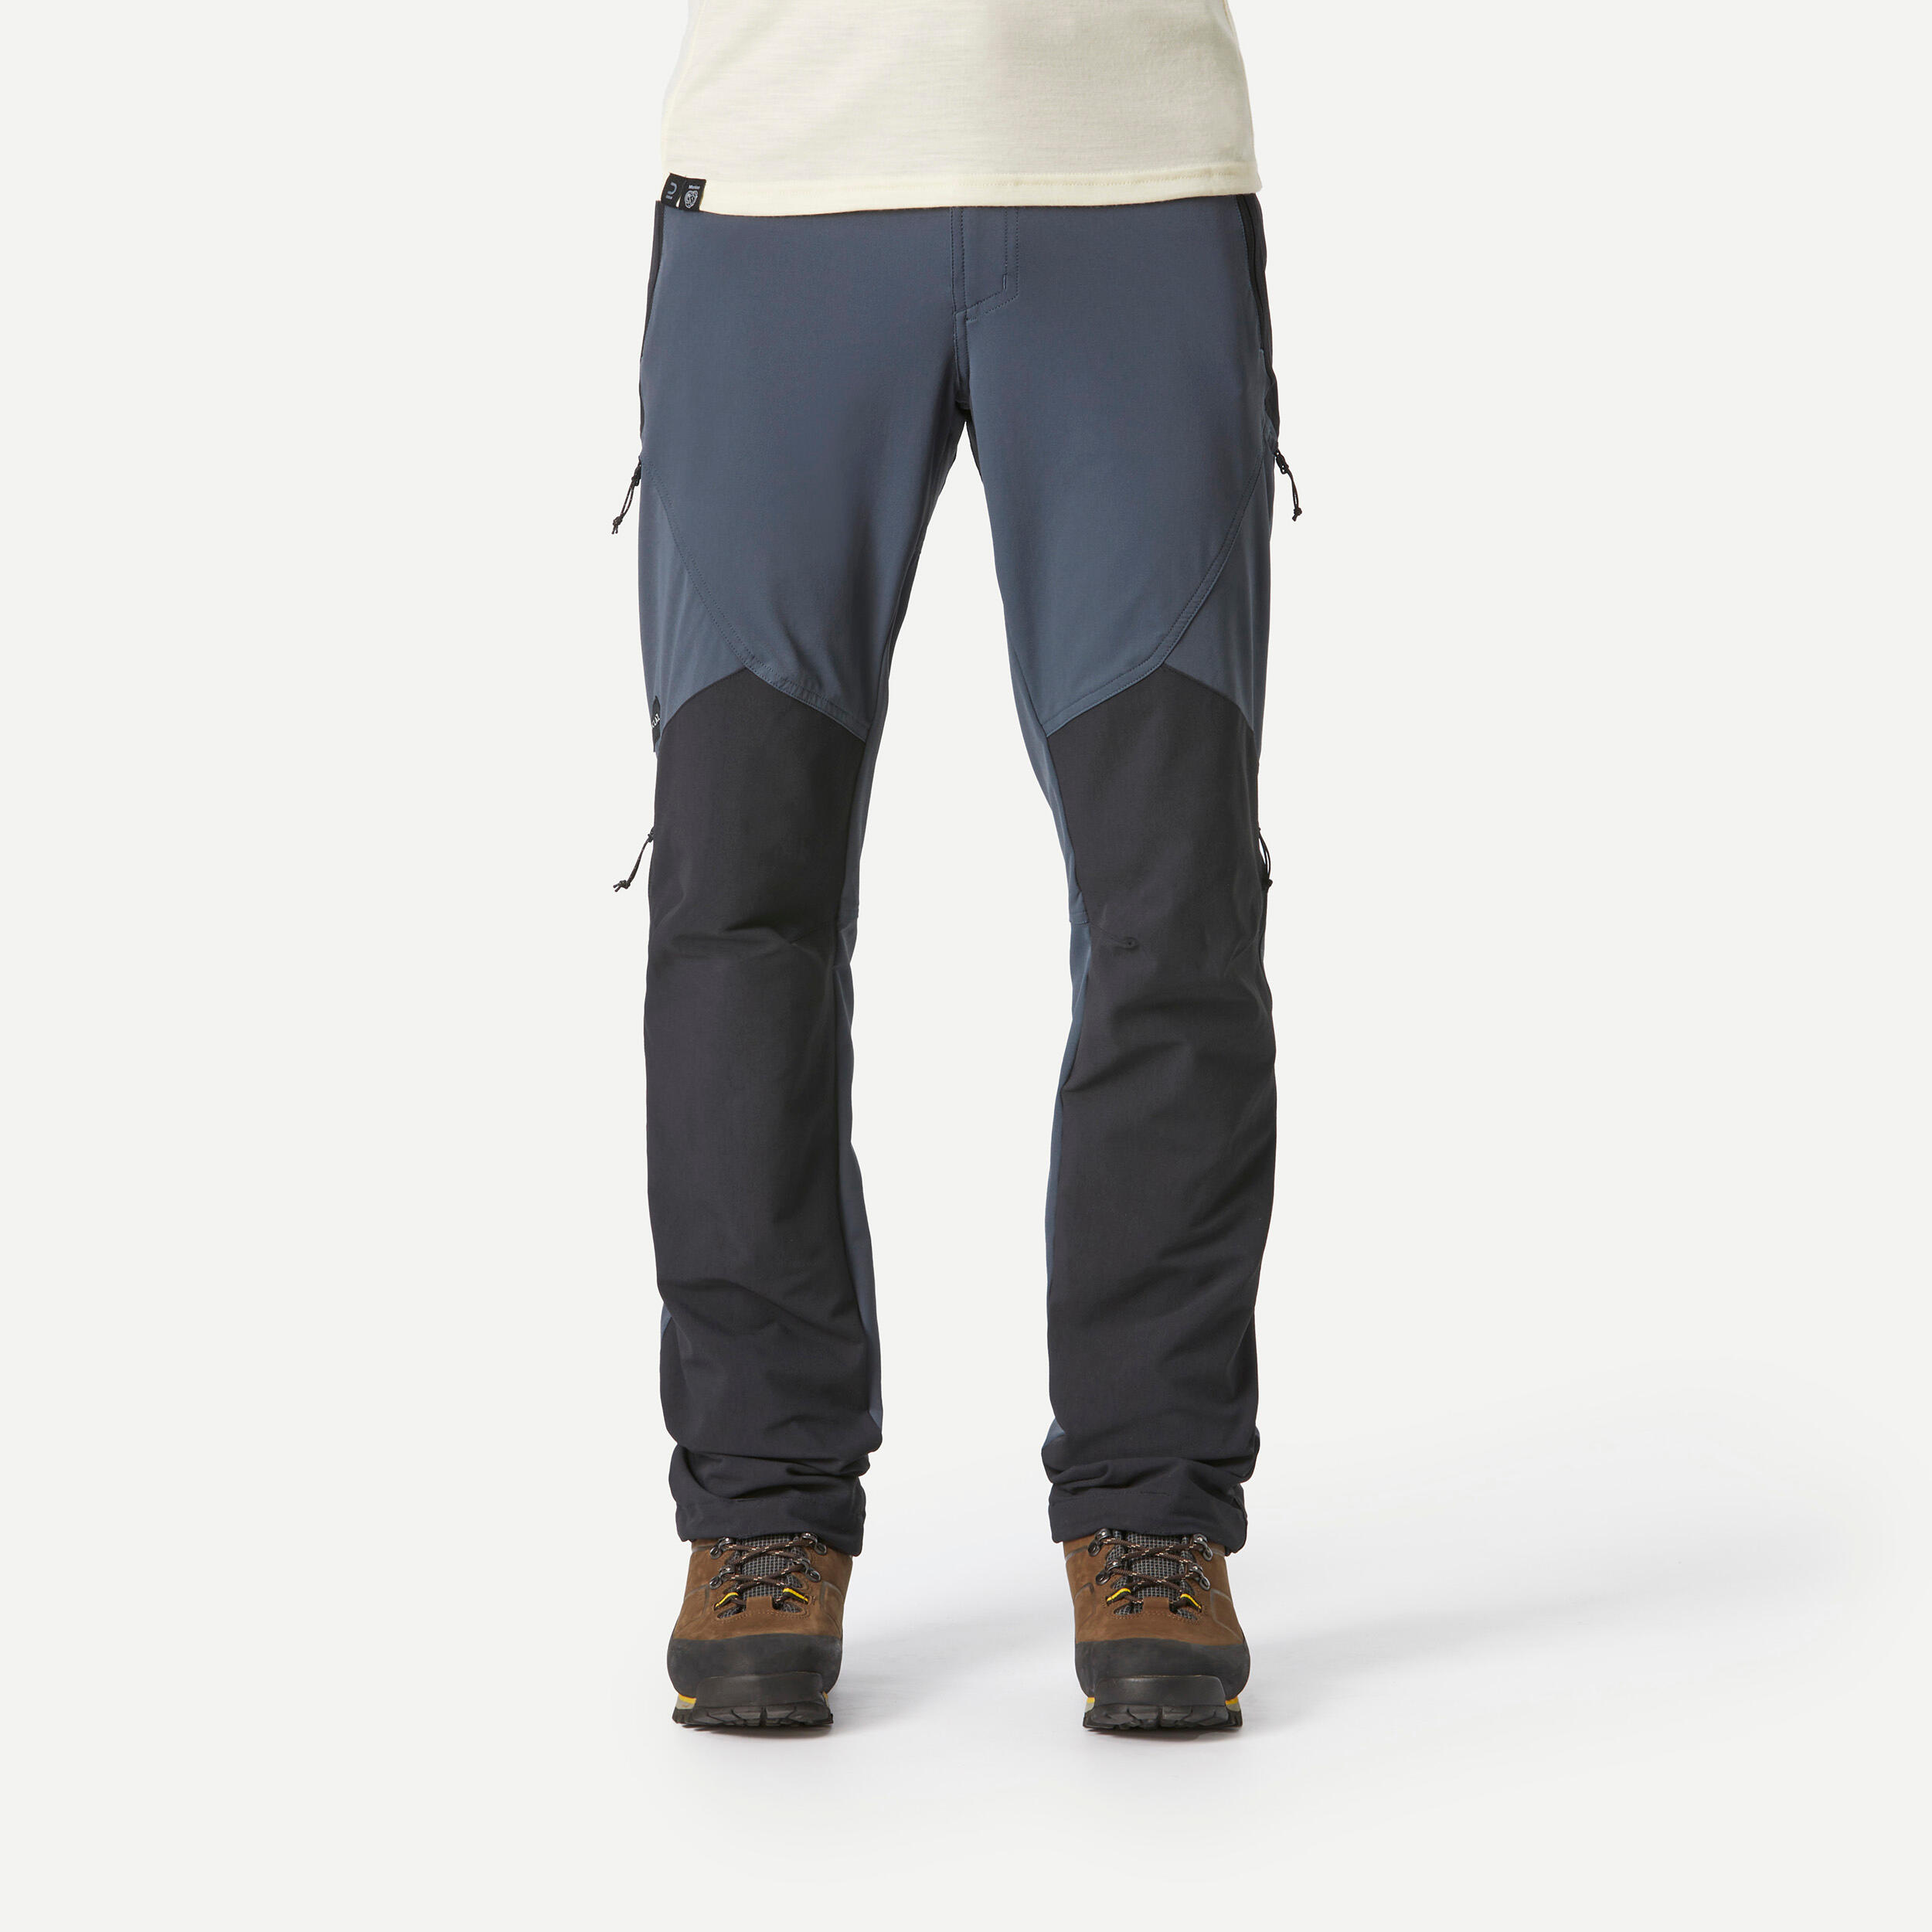 Men's Mountain Hiking Pants - MT 500 Blue - Whale grey, Asphalt